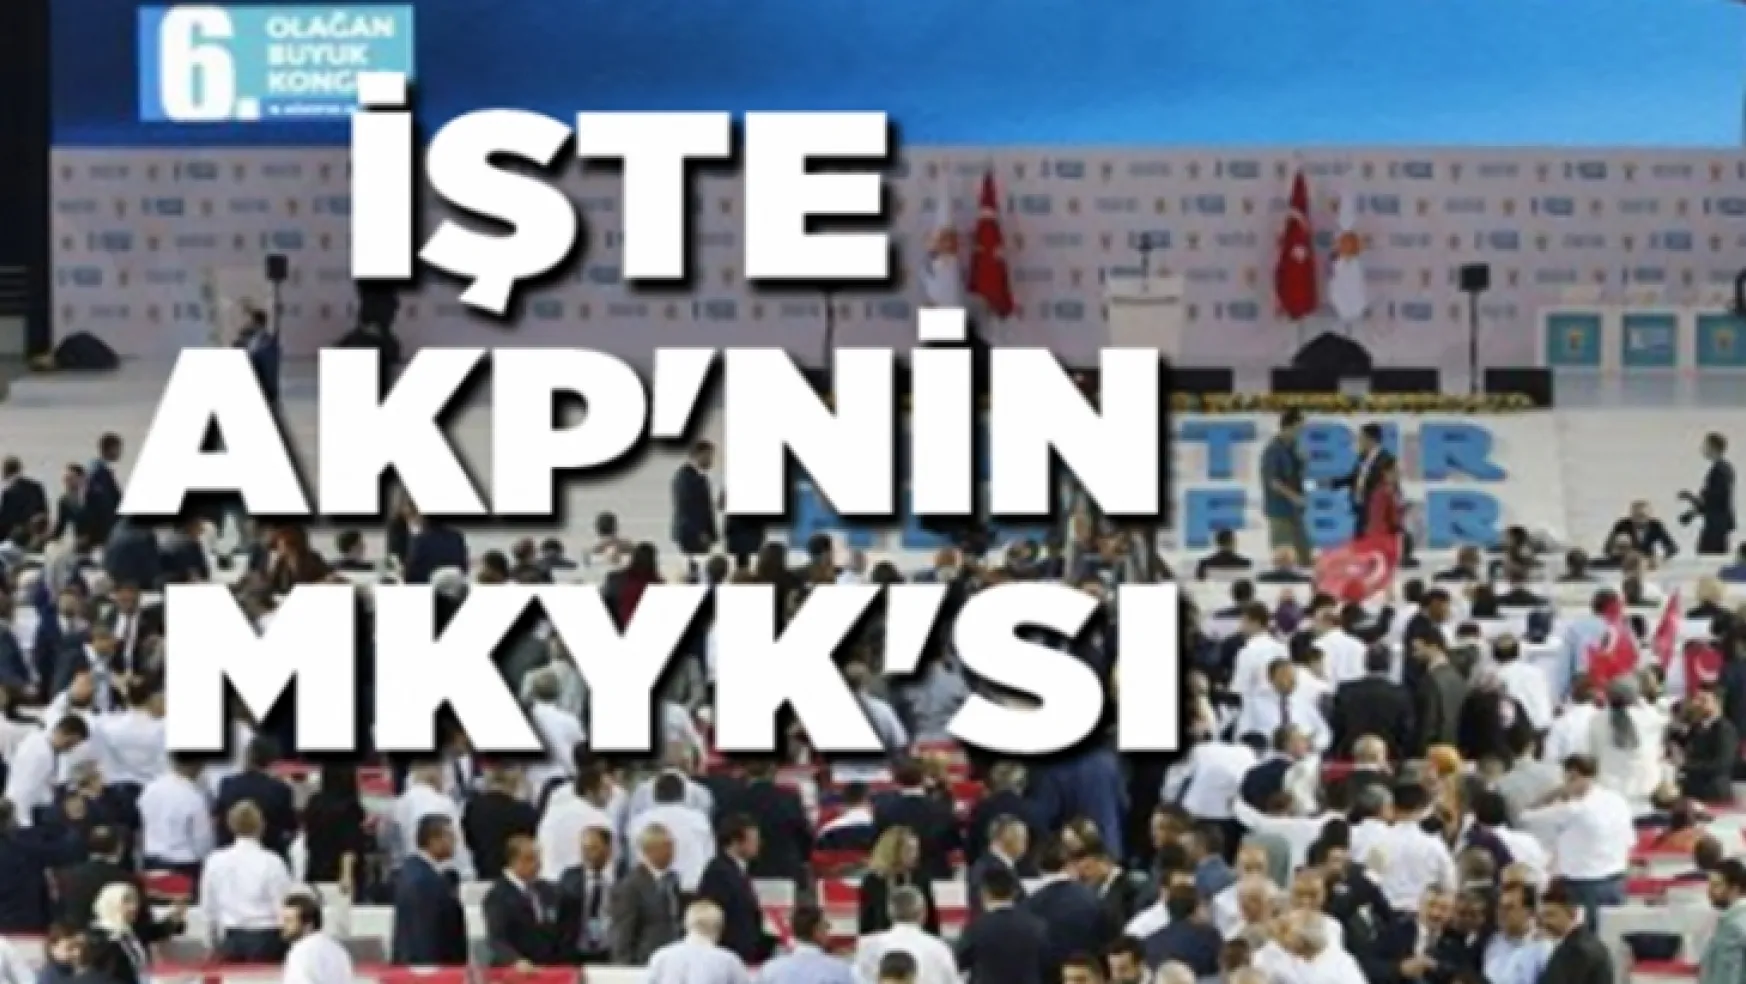 29 yeni isim listede yer aldı, İşte AKP'nin MKYK'sı